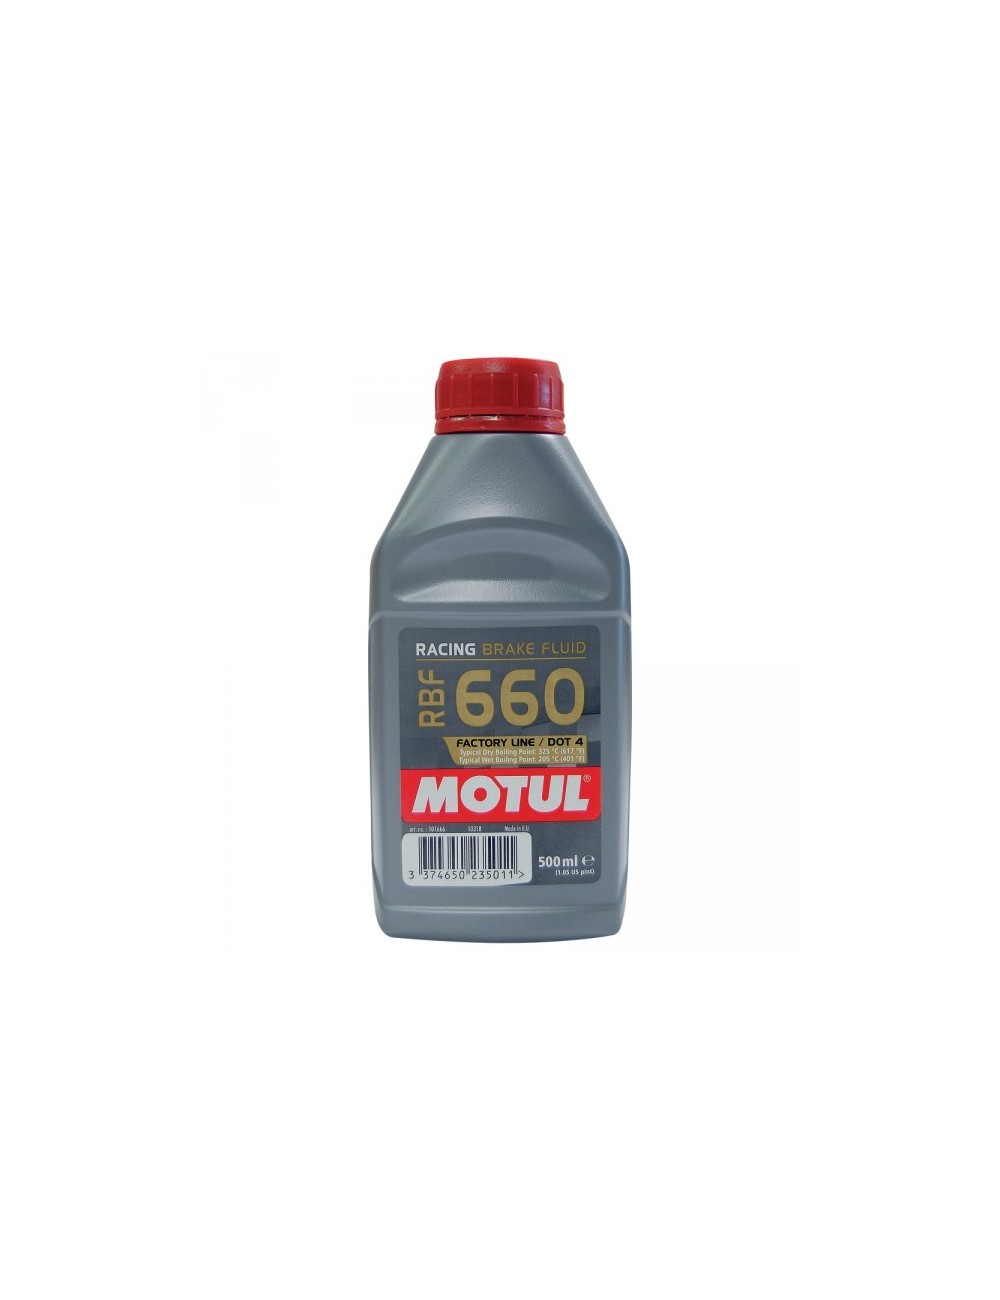 DOT 4 Brake Fluid Motul RBF 660 1/2 W 325 ° C